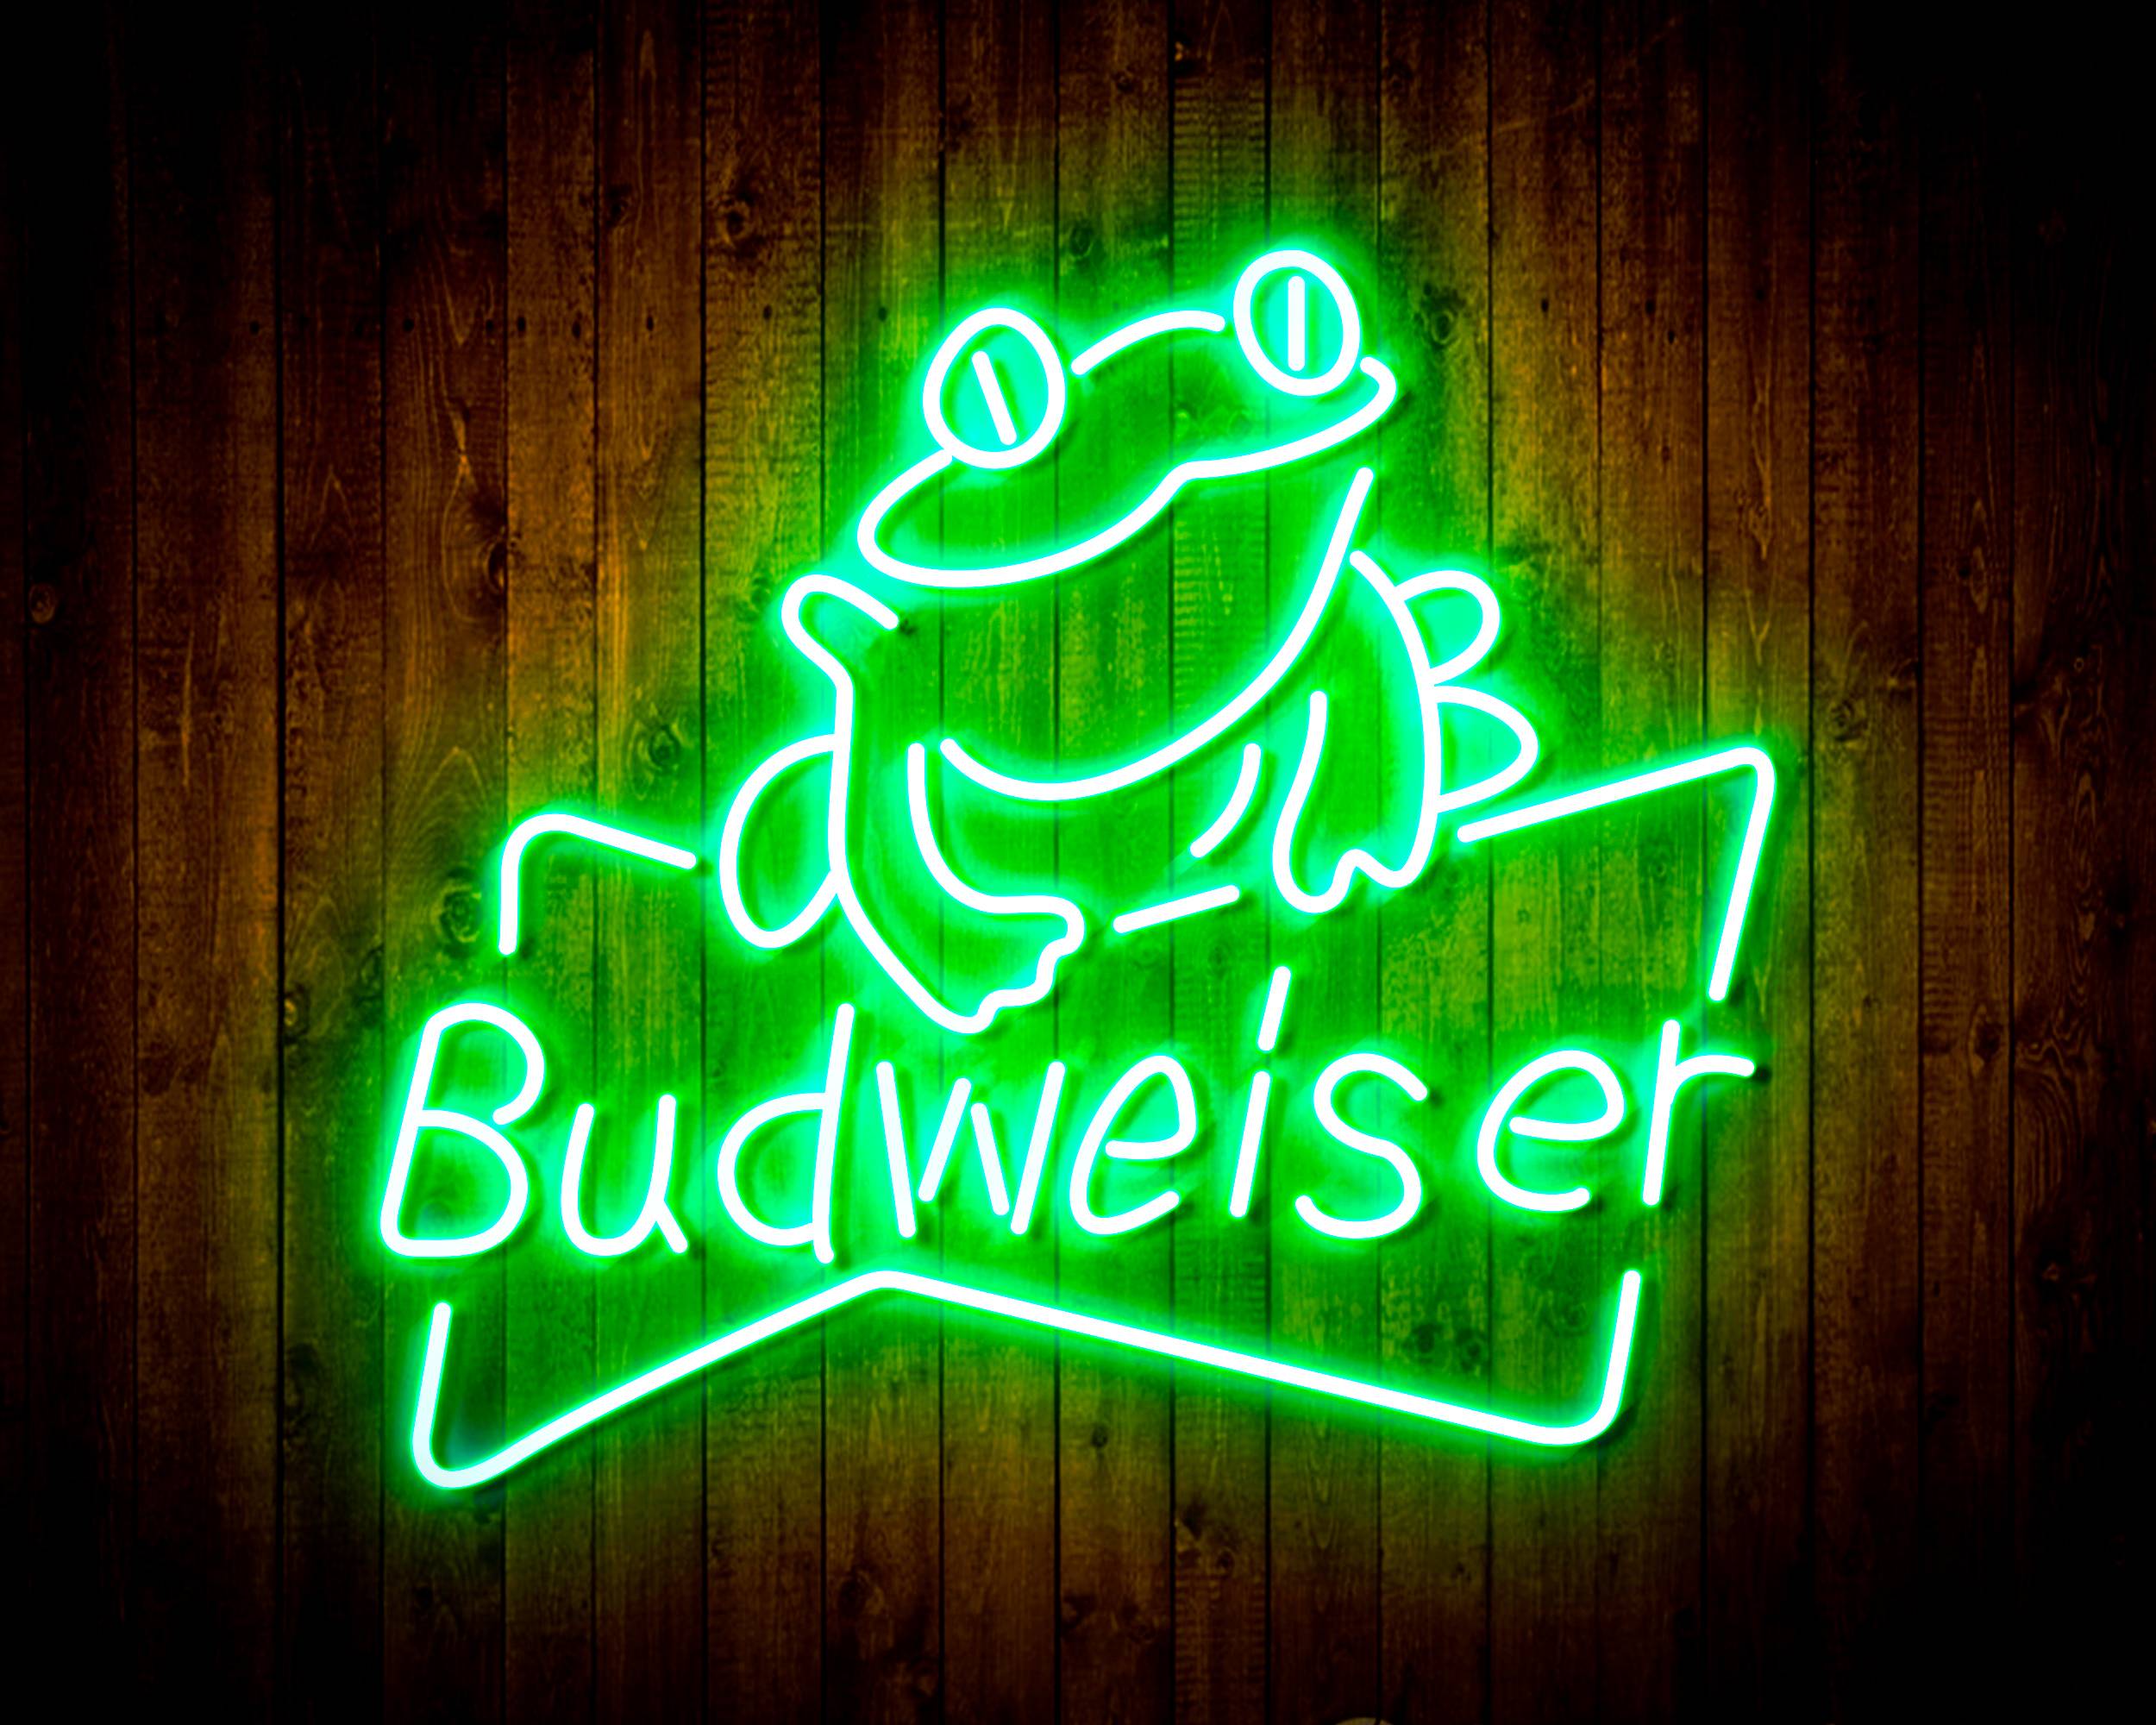 Budweiser Frog Beer Bar Neon LED Sign